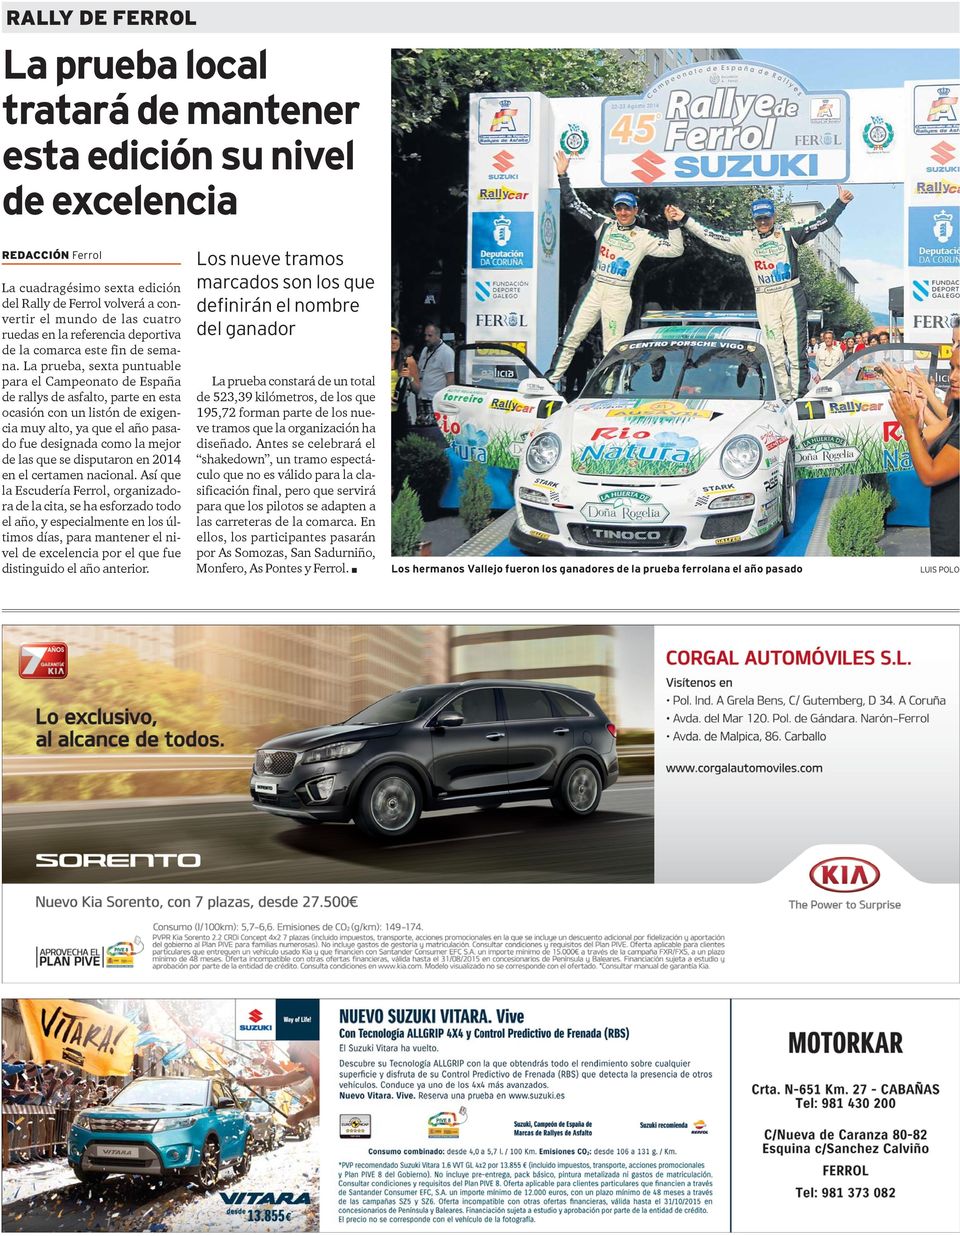 La prueba, sexta puntuable para el Campeonato de España de rallys de asfalto, parte en esta ocasión con un listón de exigencia muy alto, ya que el año pasado fue designada como la mejor de las que se